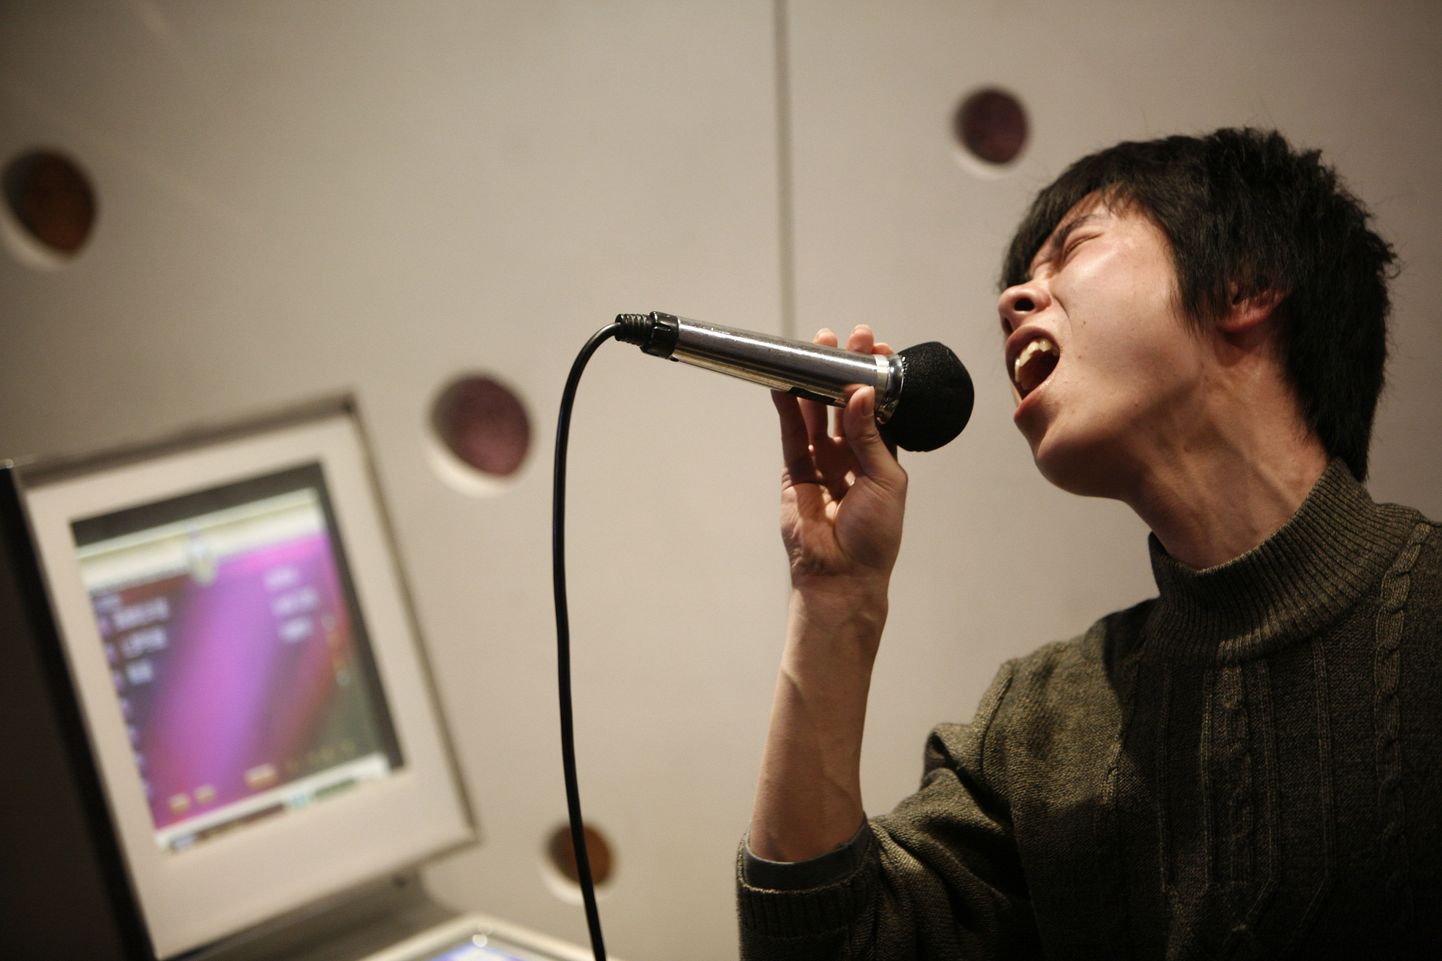 Laulmine võib aidata pärast insulti kiiremini kõnelema hakata. Pildil Shanghai karaokebaaris esinev noormees.